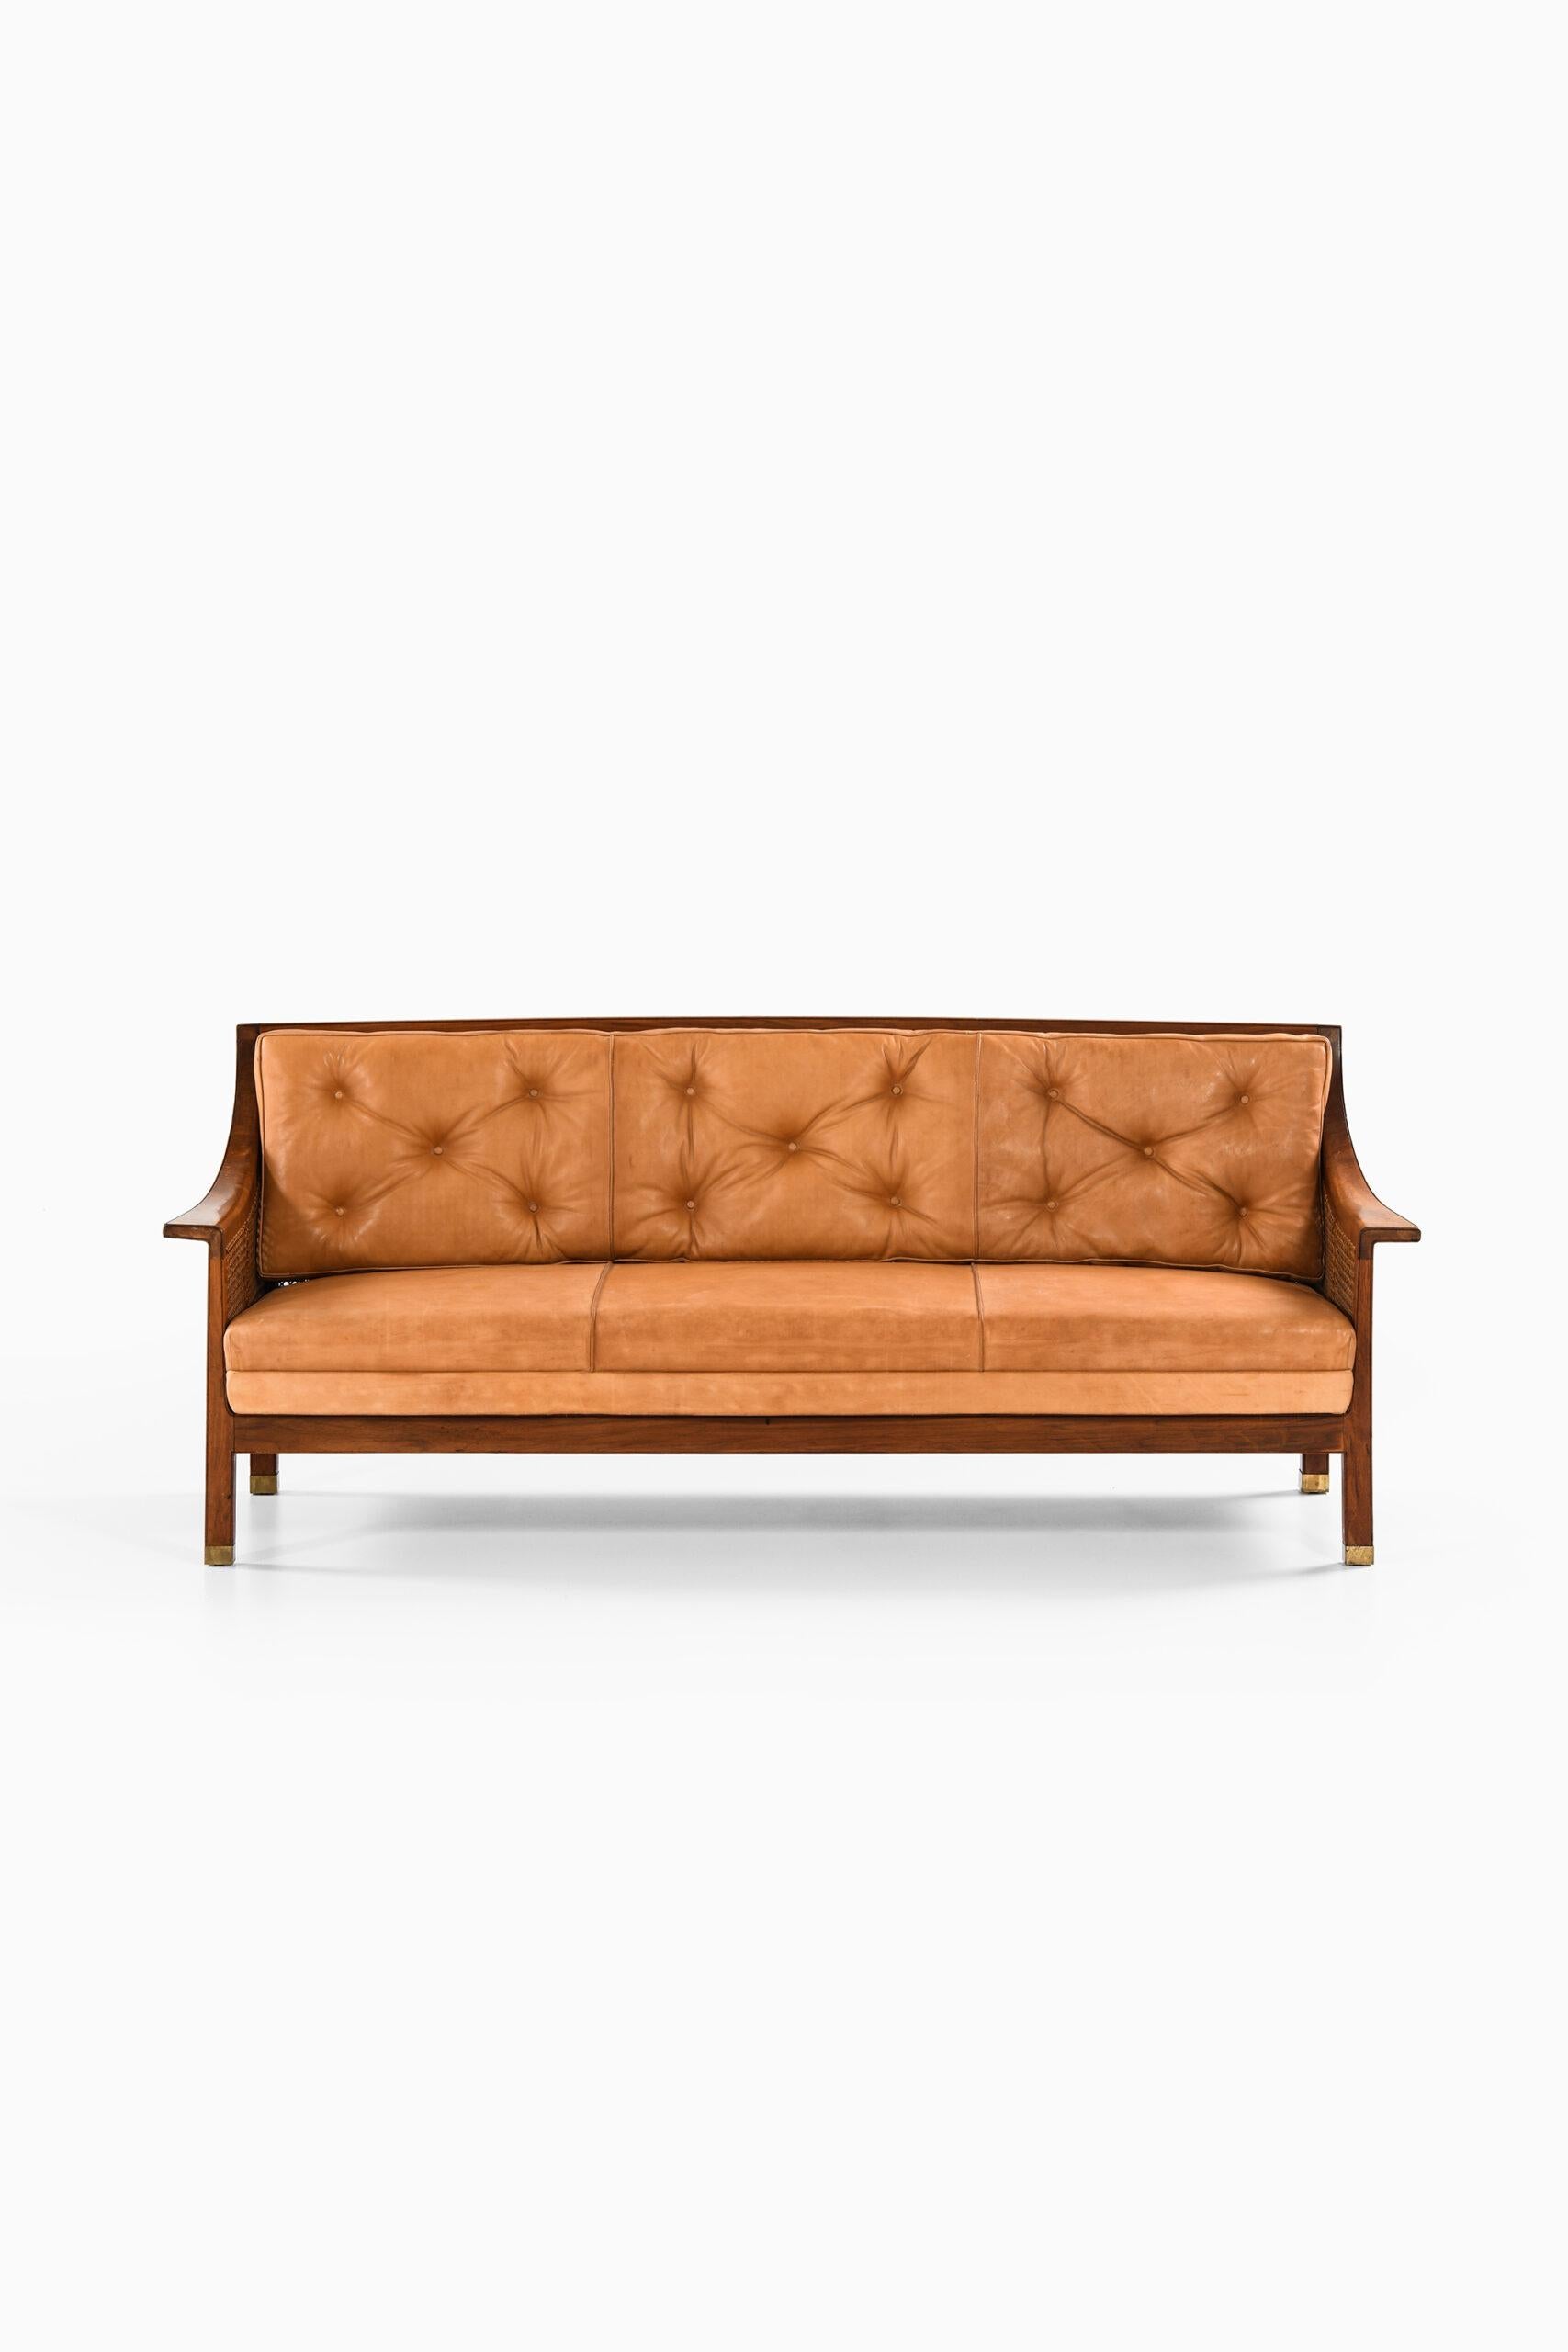 Einzigartiges freistehendes Sofa, entworfen von Arne Jacobsen. Hergestellt von der Tischlerei Otto Meyer in Dänemark.

Provenienz: 
Herausgeber Fergo, also durch Abstammung in der Familie. Das Sofa wurde am 17. Februar 1927 als Teil der